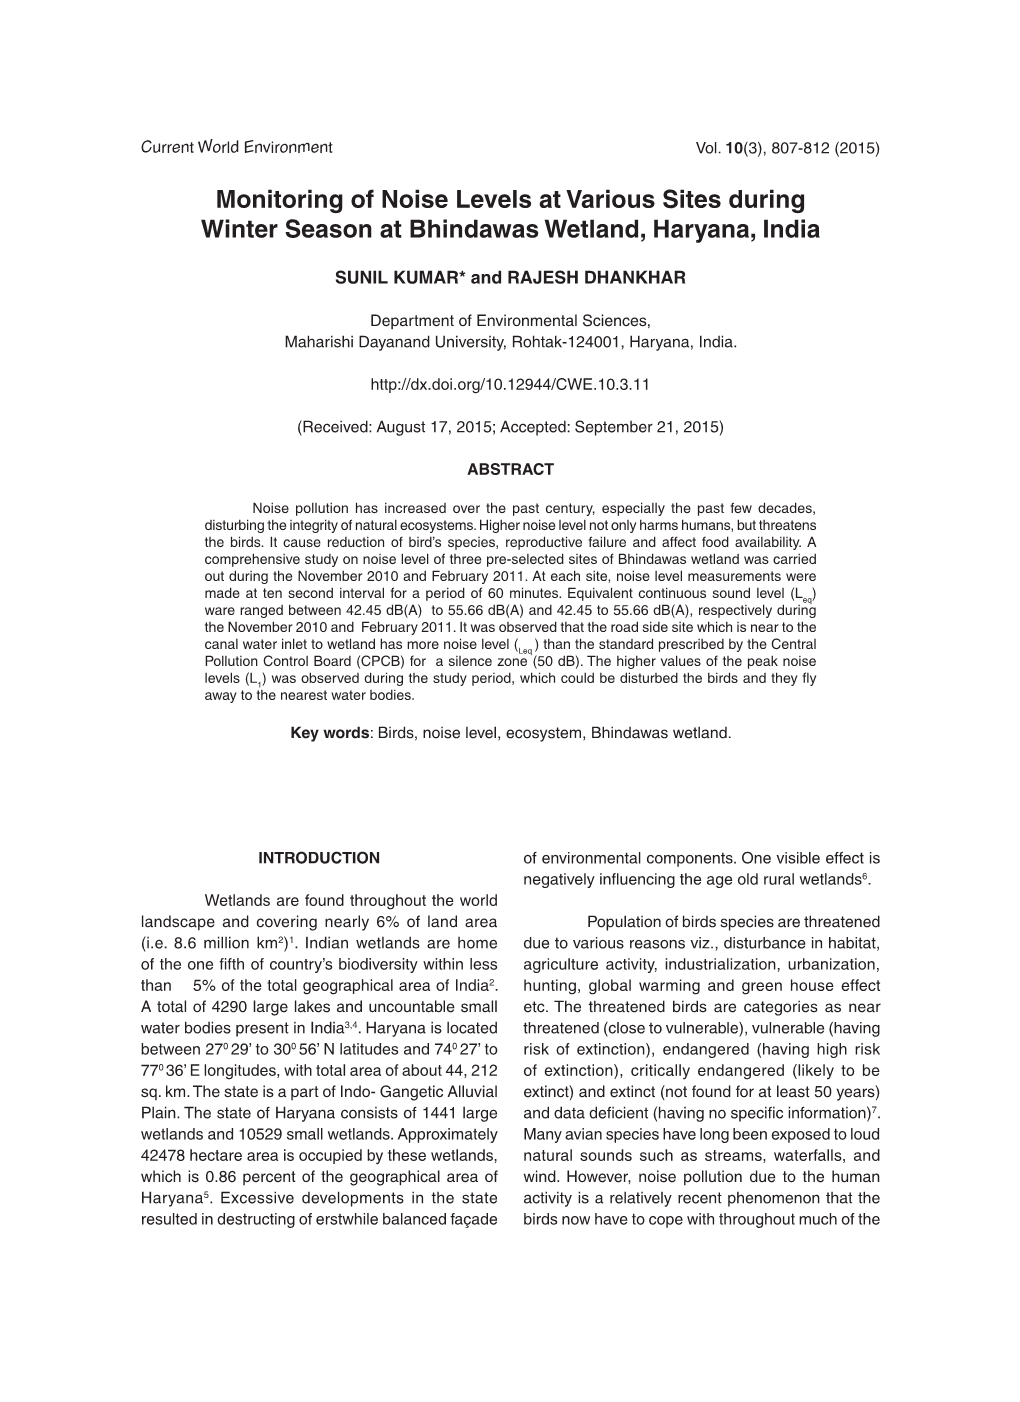 Monitoring of Noise Levels at Various Sites During Winter Season at Bhindawas Wetland, Haryana, India